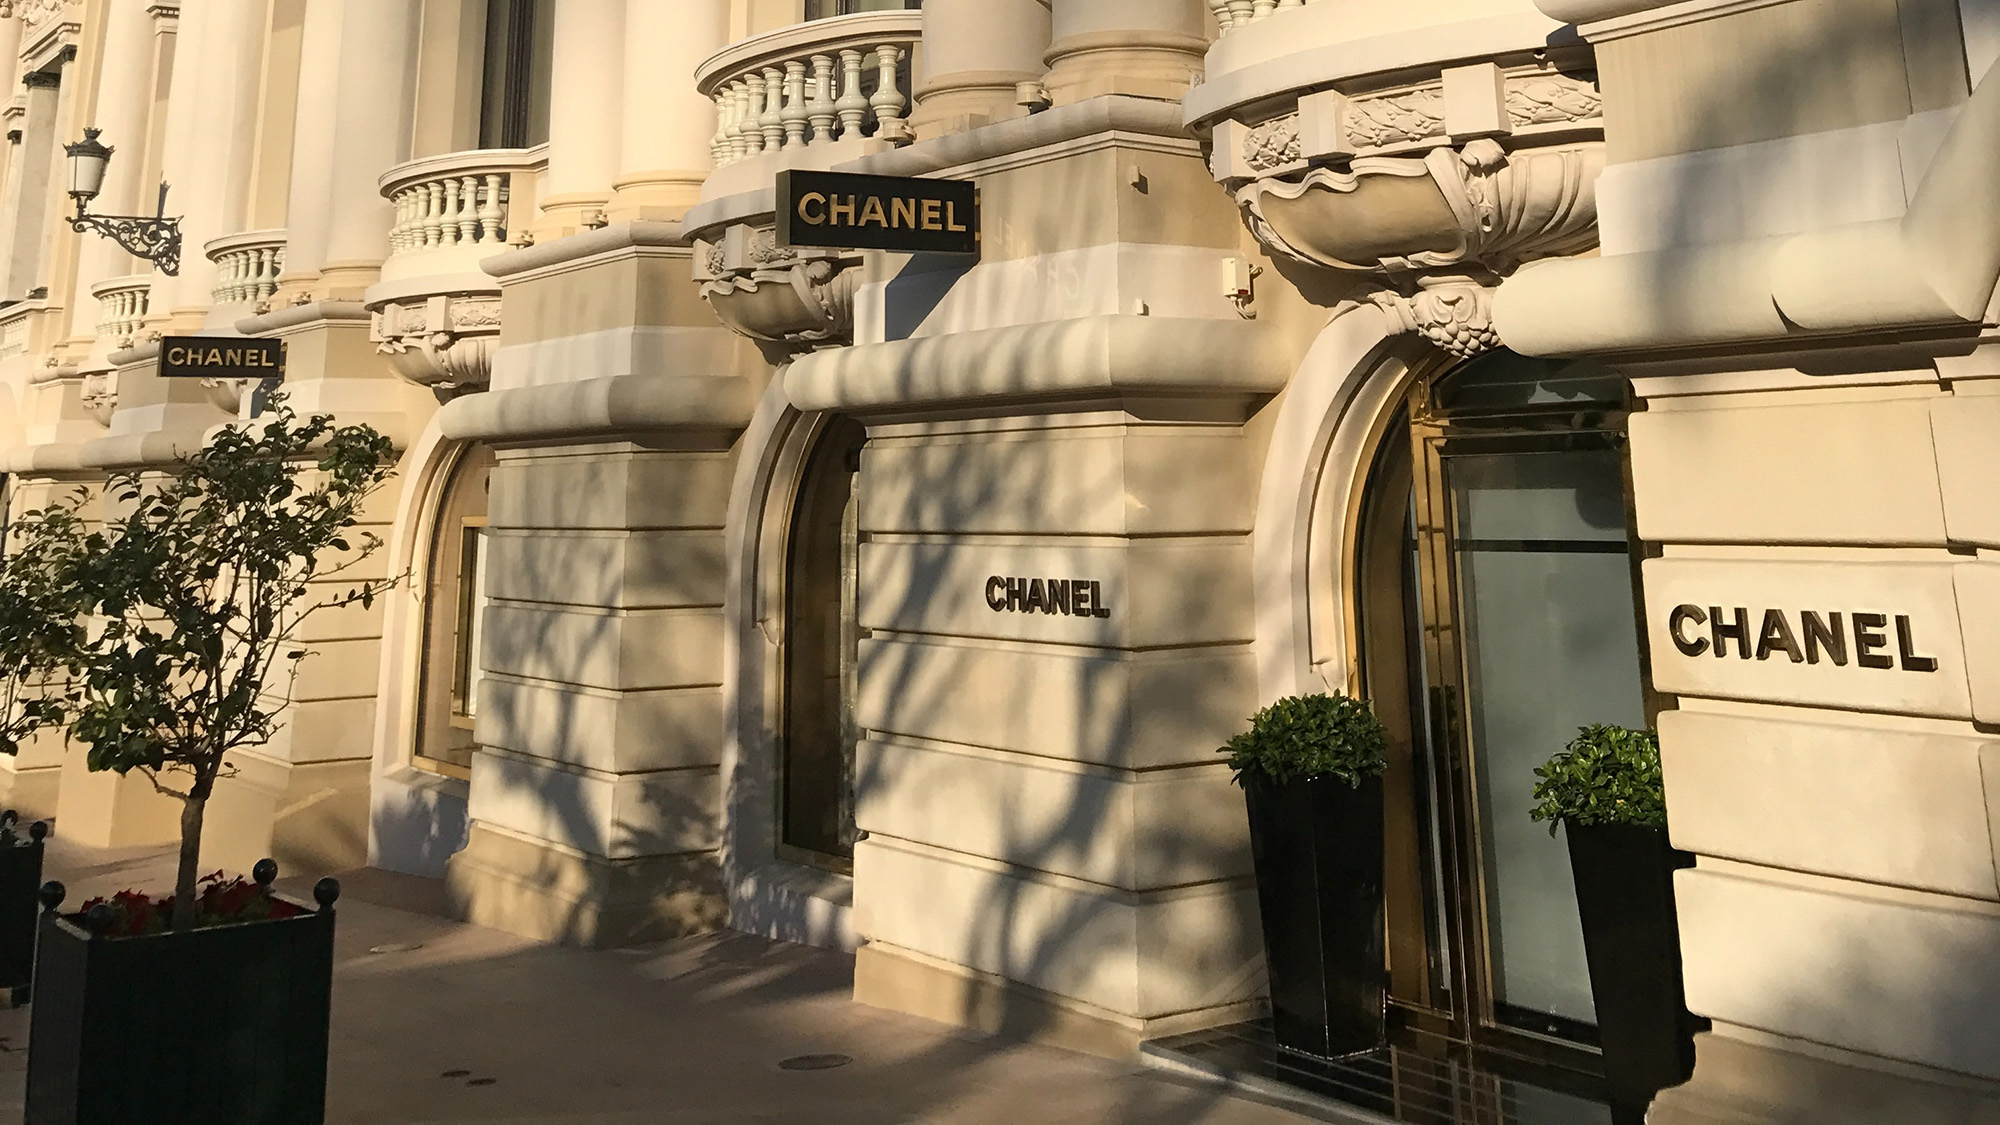 Chanel's vineyards